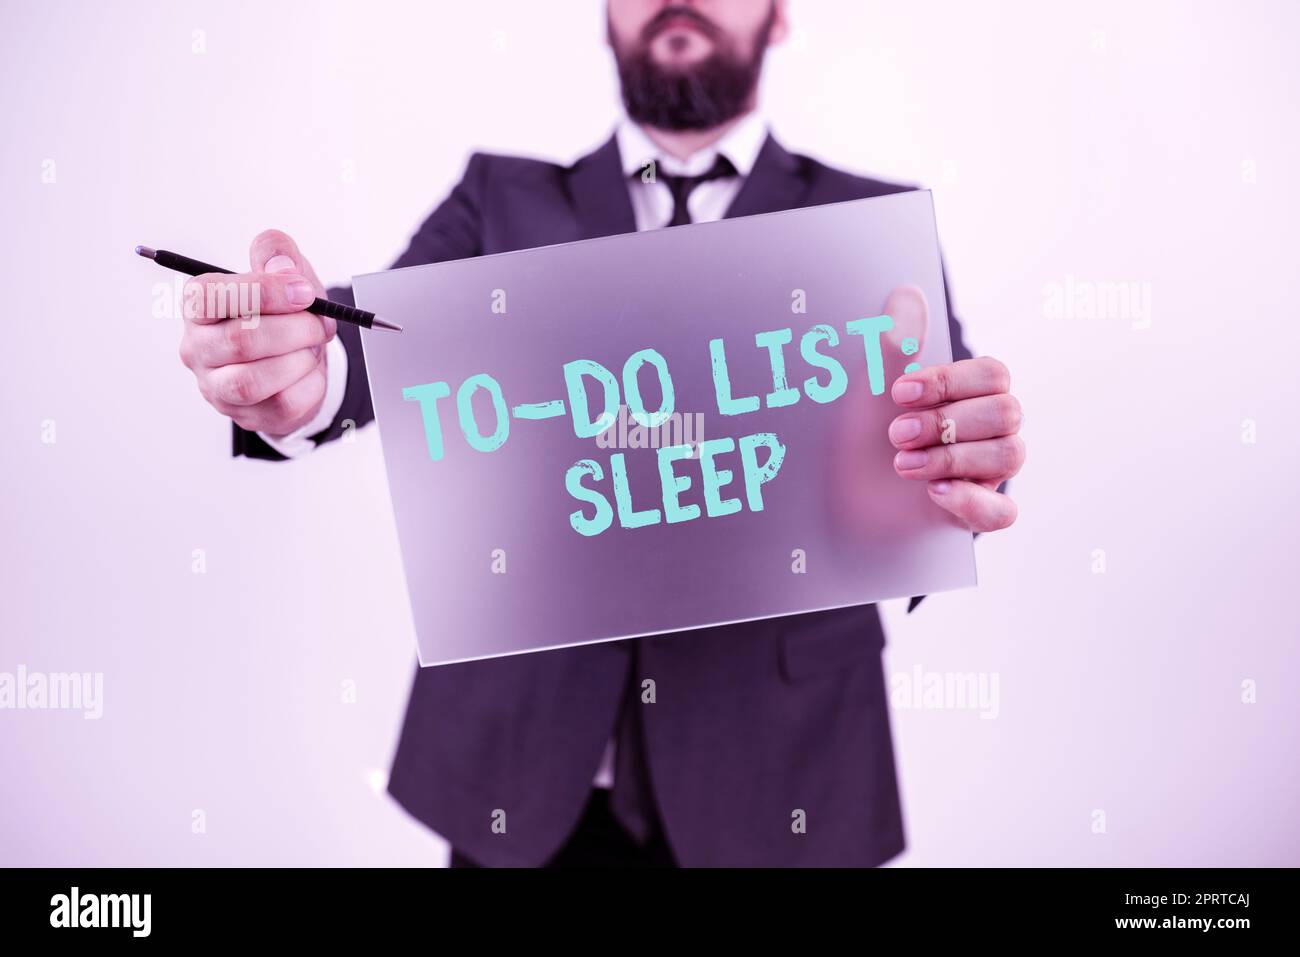 La didascalia di testo che presenta SleepThings To Do List (SleepThings To Do List To Be Done) oggetto prioritario consiste nel prendersi una pausa. Concetto aziendale cose da fare l'obiettivo prioritario è riposarsi Foto Stock